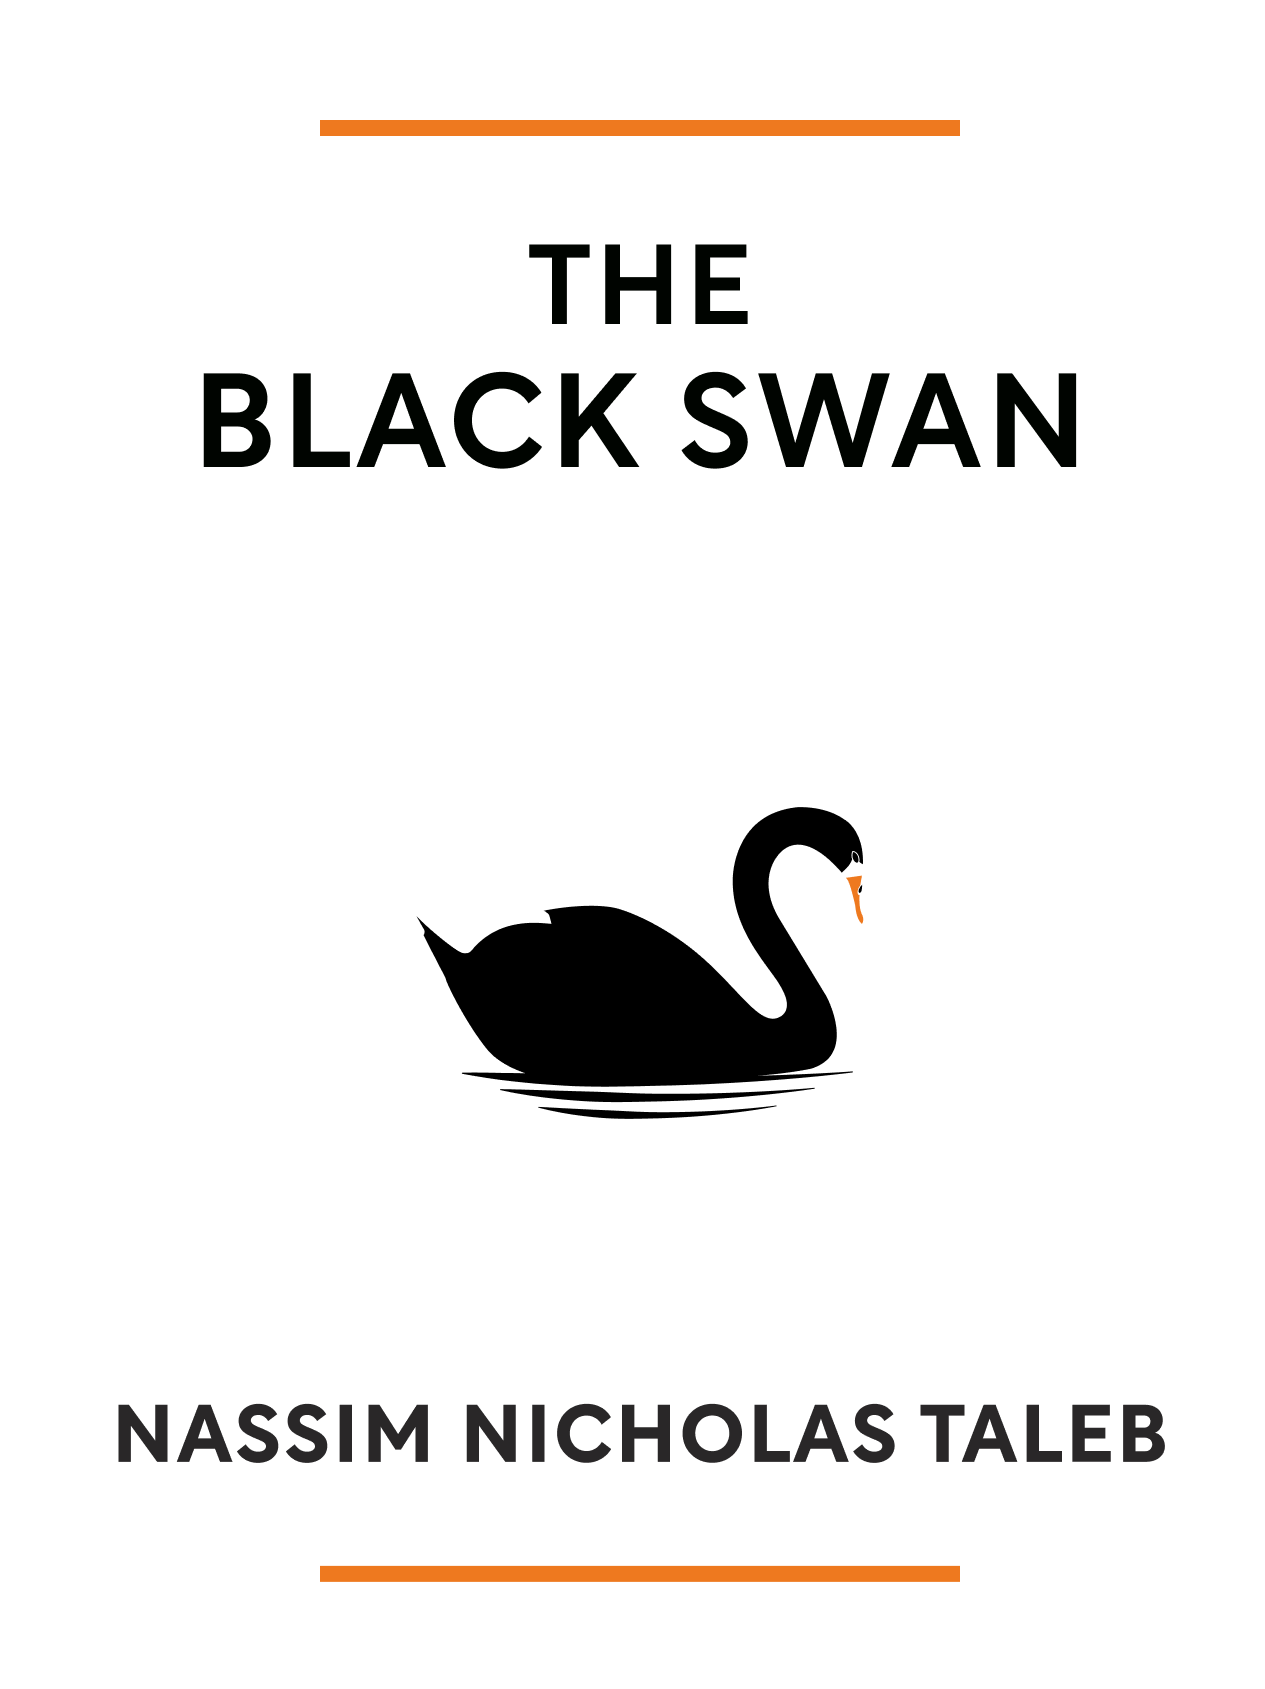 Nassim Nicholas Taleb: The Black Swan (Paperback, 2008, Random House Inc.)